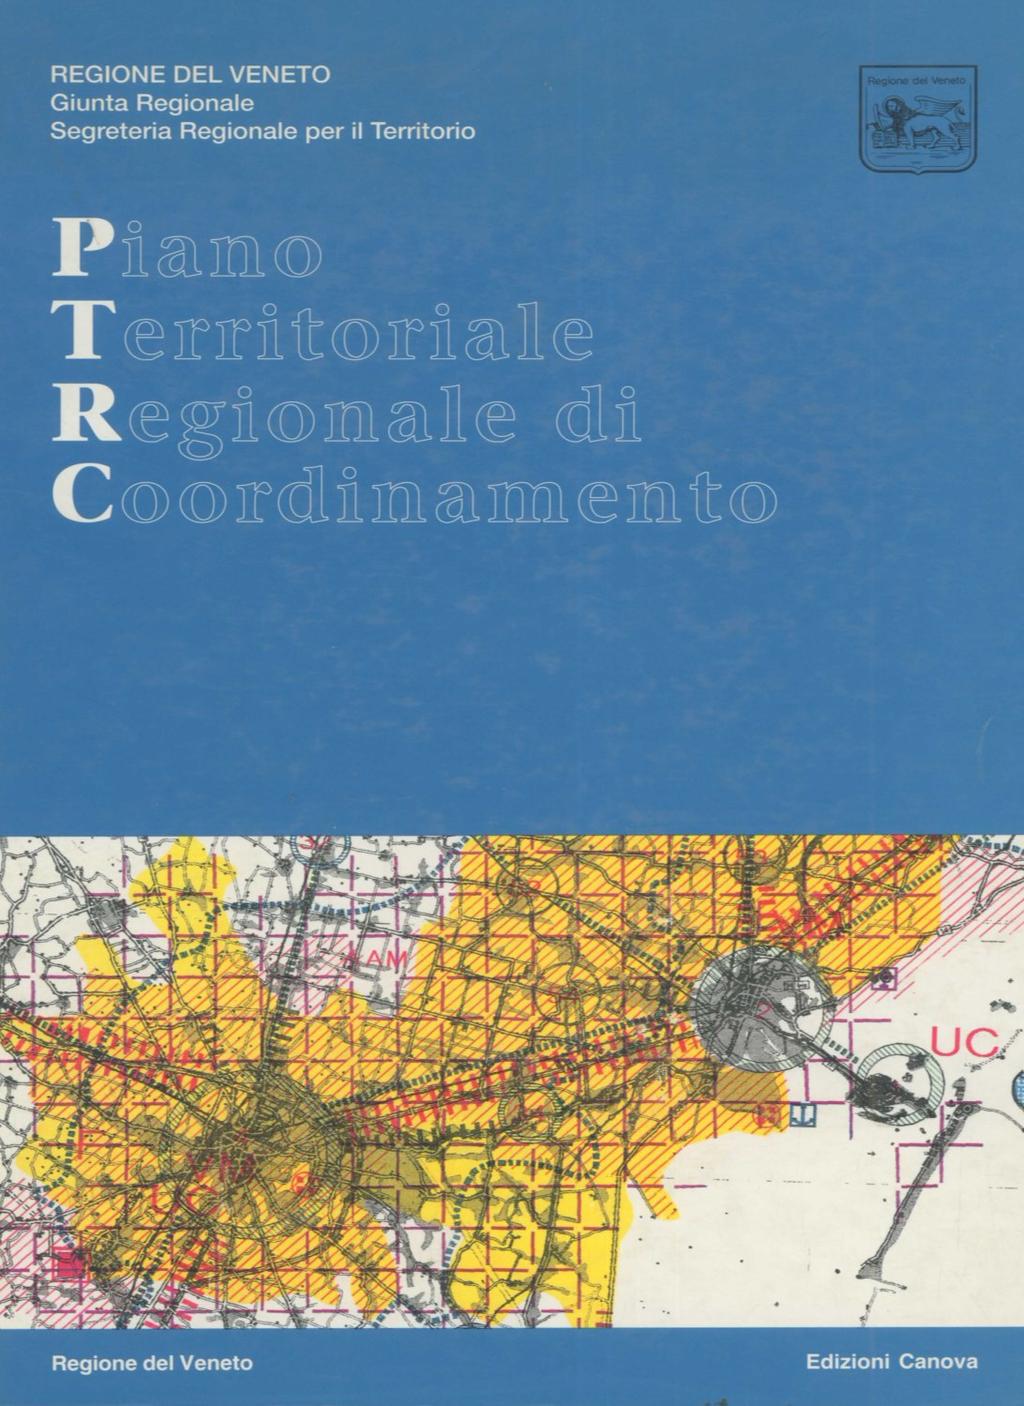 Veneto, fase 2a (anni 80-90) I Piano Territoriale Regionale di Coordinamento (Venezia 1993)